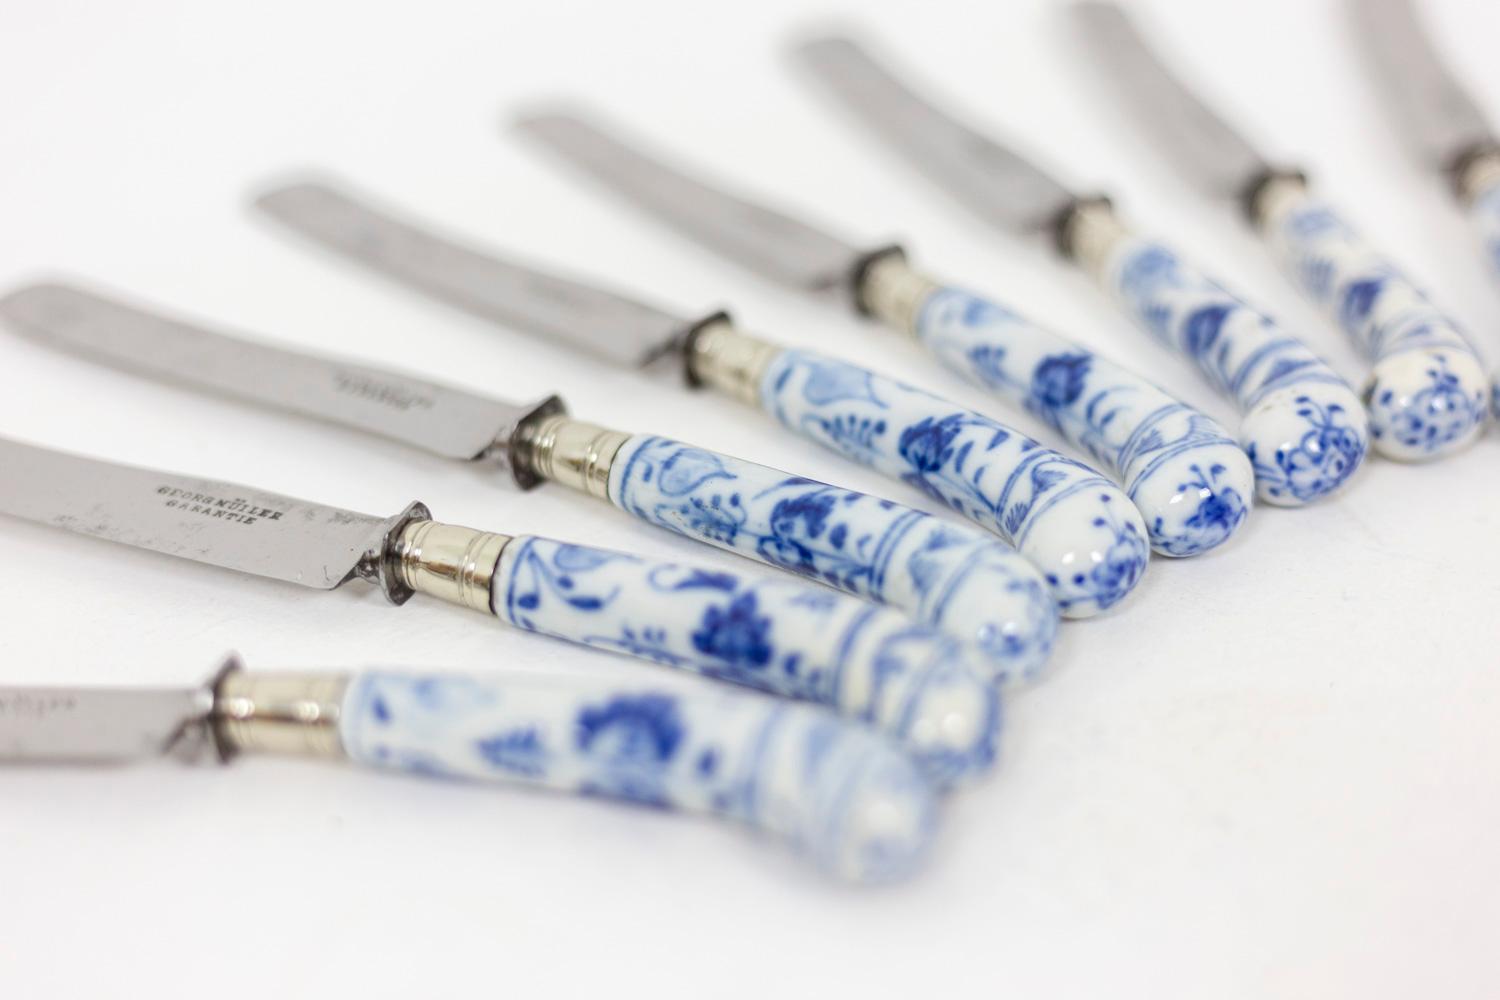 Satz von 11 Messern mit geschwungenen blau-weiß emaillierten Griffen, verziert mit einem pflanzlichen Dekor. Gebogene Silberklinge. Signiert Georg Müller Garantie auf der Klinge.

Das Werk wurde im 19. Jahrhundert realisiert.

Verwendet auf der